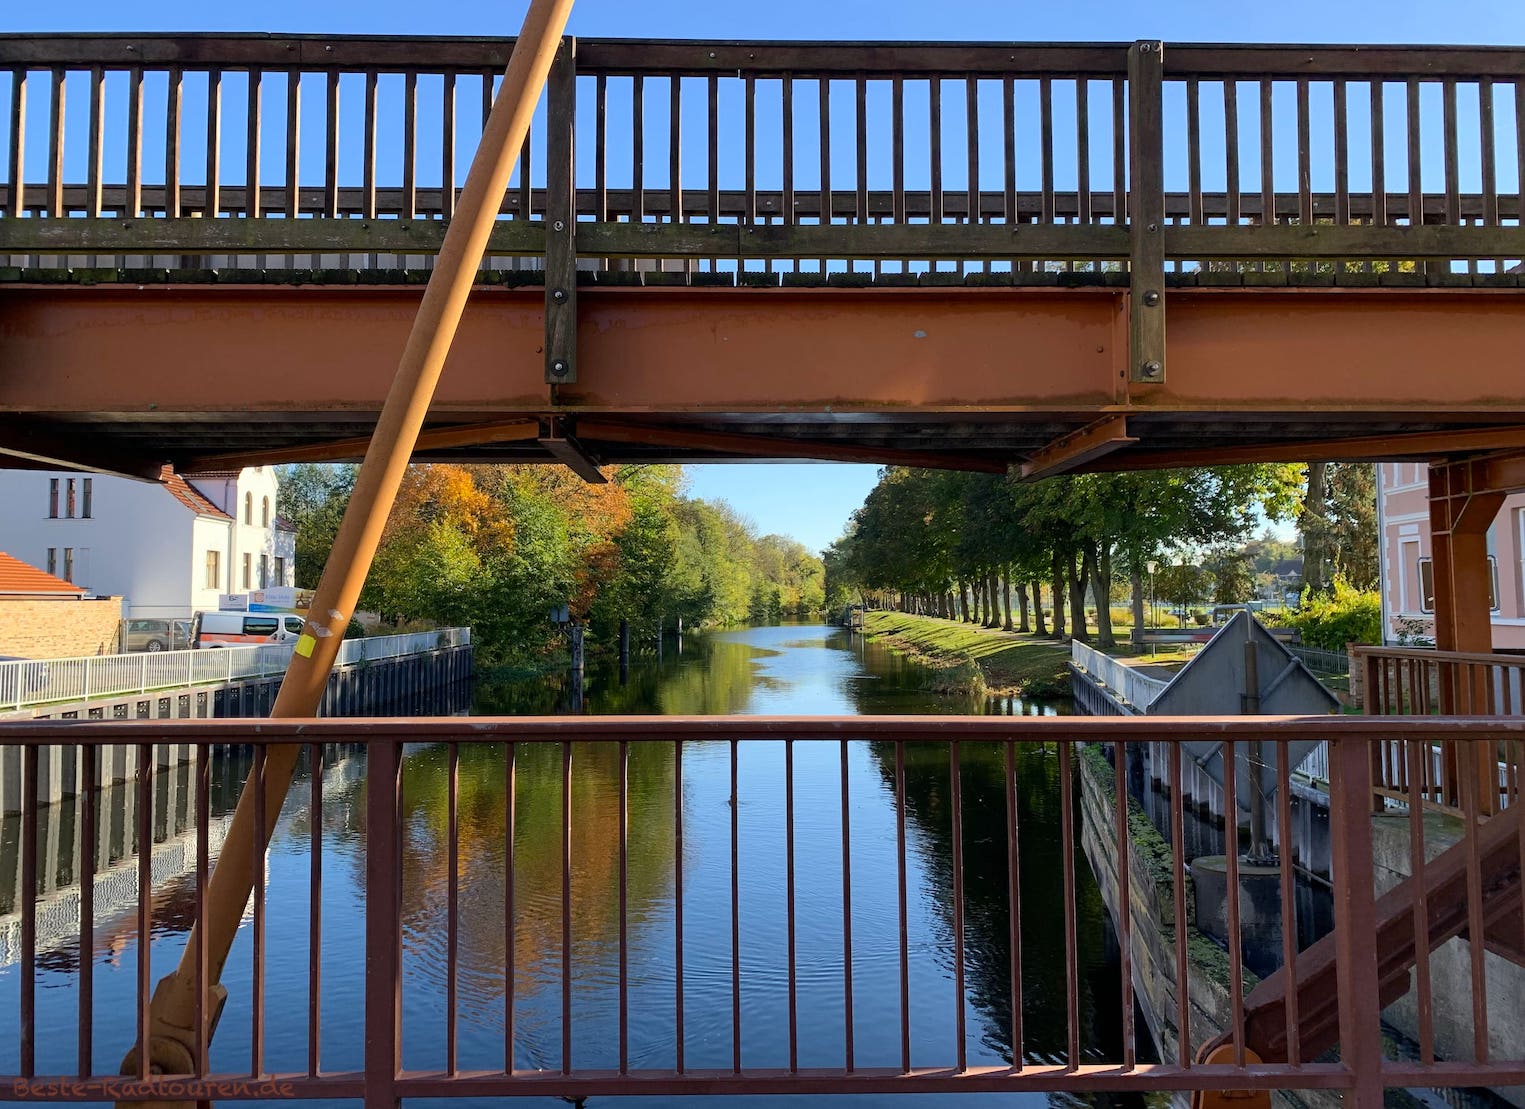 Foto von der Zugbrücke bzw Hastbrücke Zehdenick aus, Blick auf die Havel Richtung Vosskanal